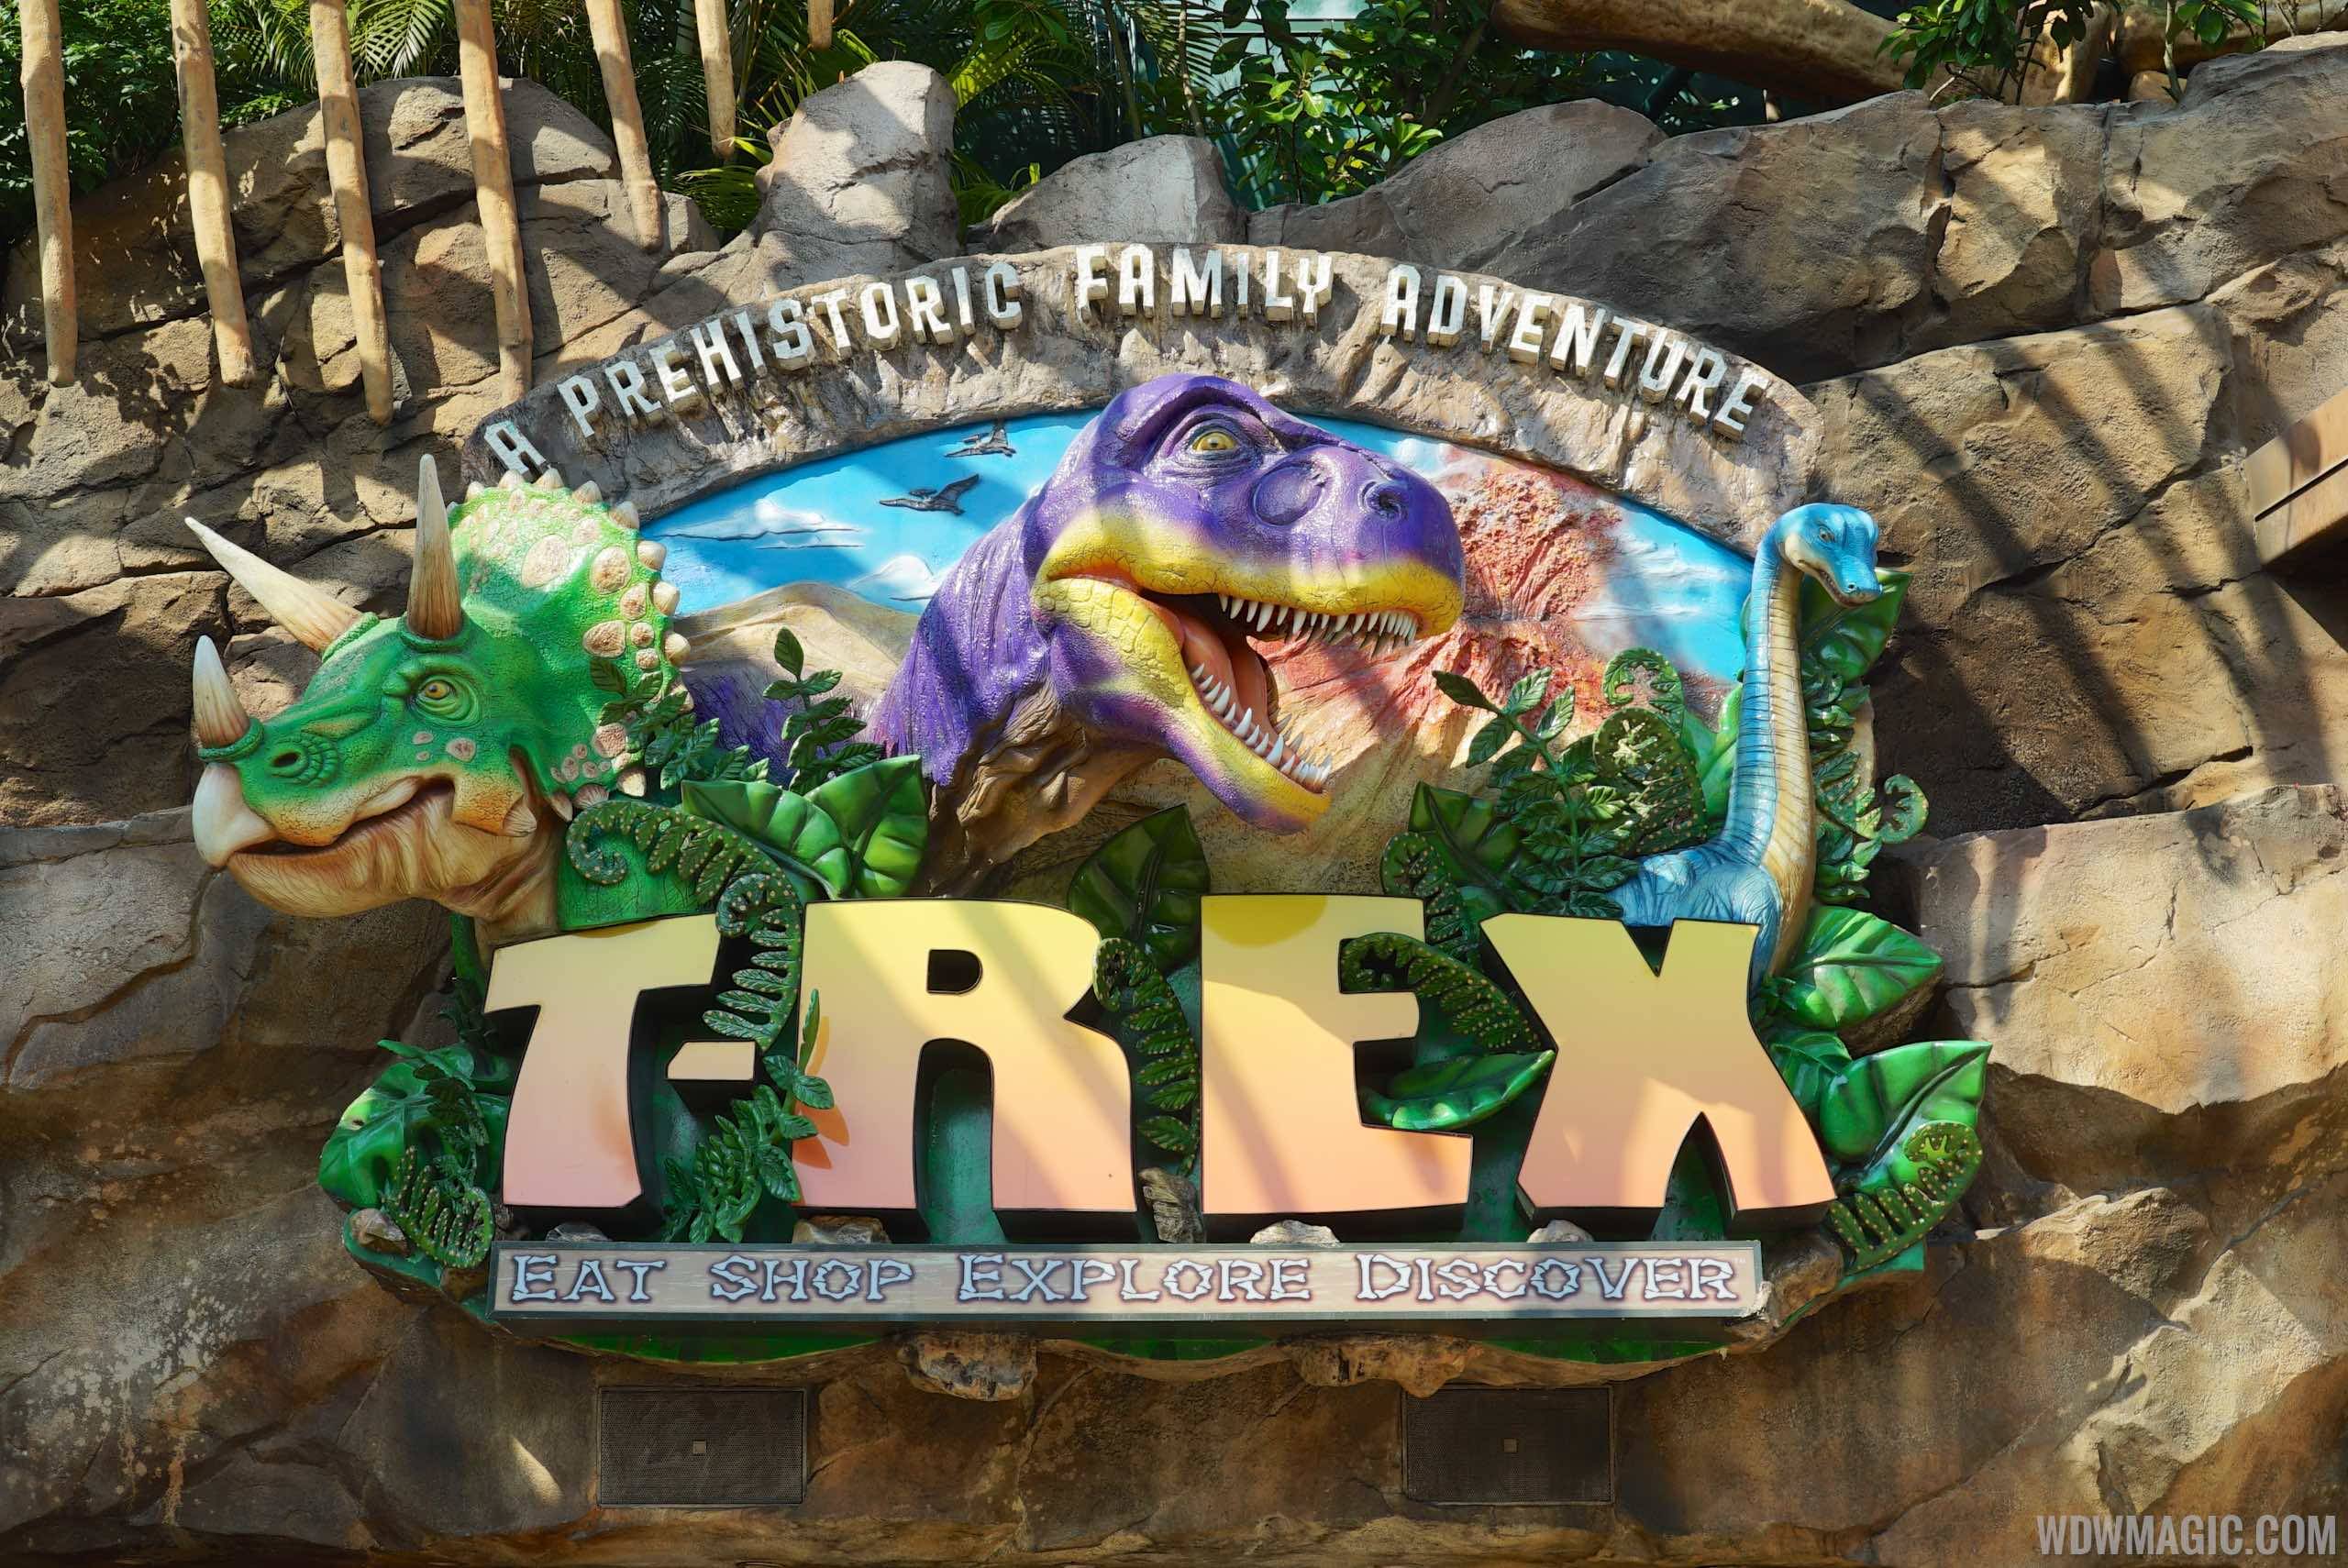 The T-Rex Cafe is T-Rrific!